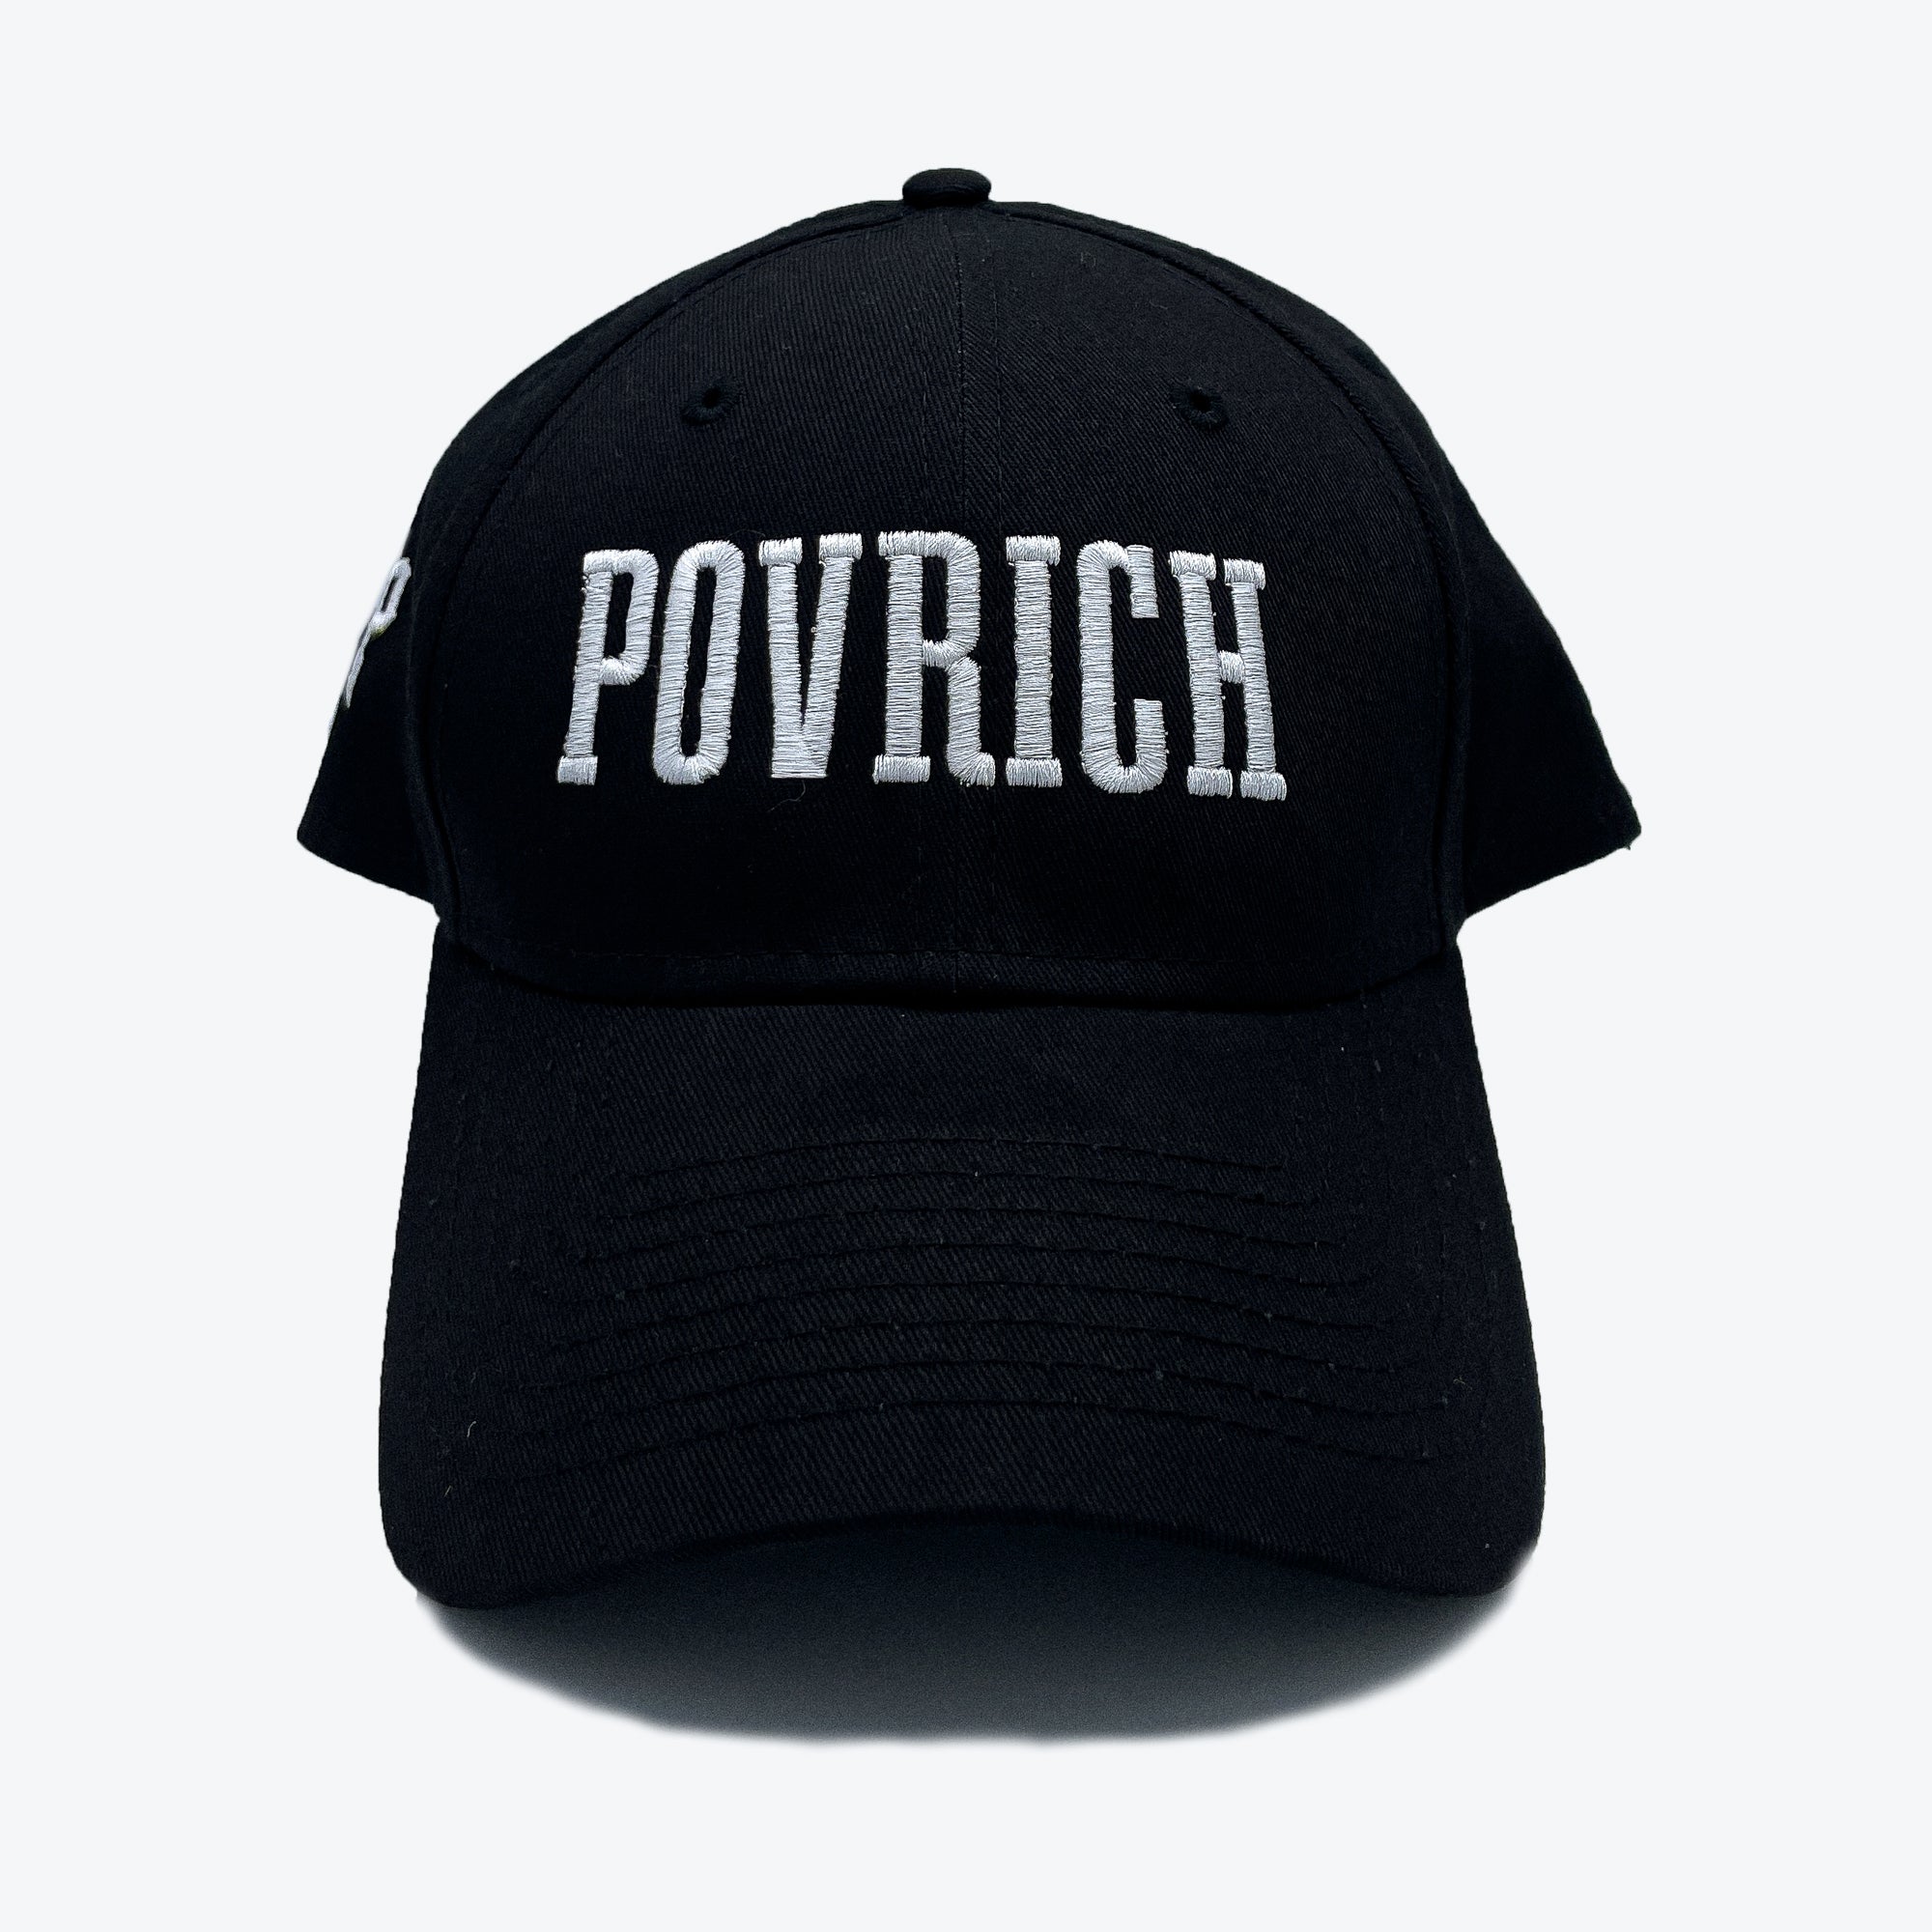 Povrich Signature Cap